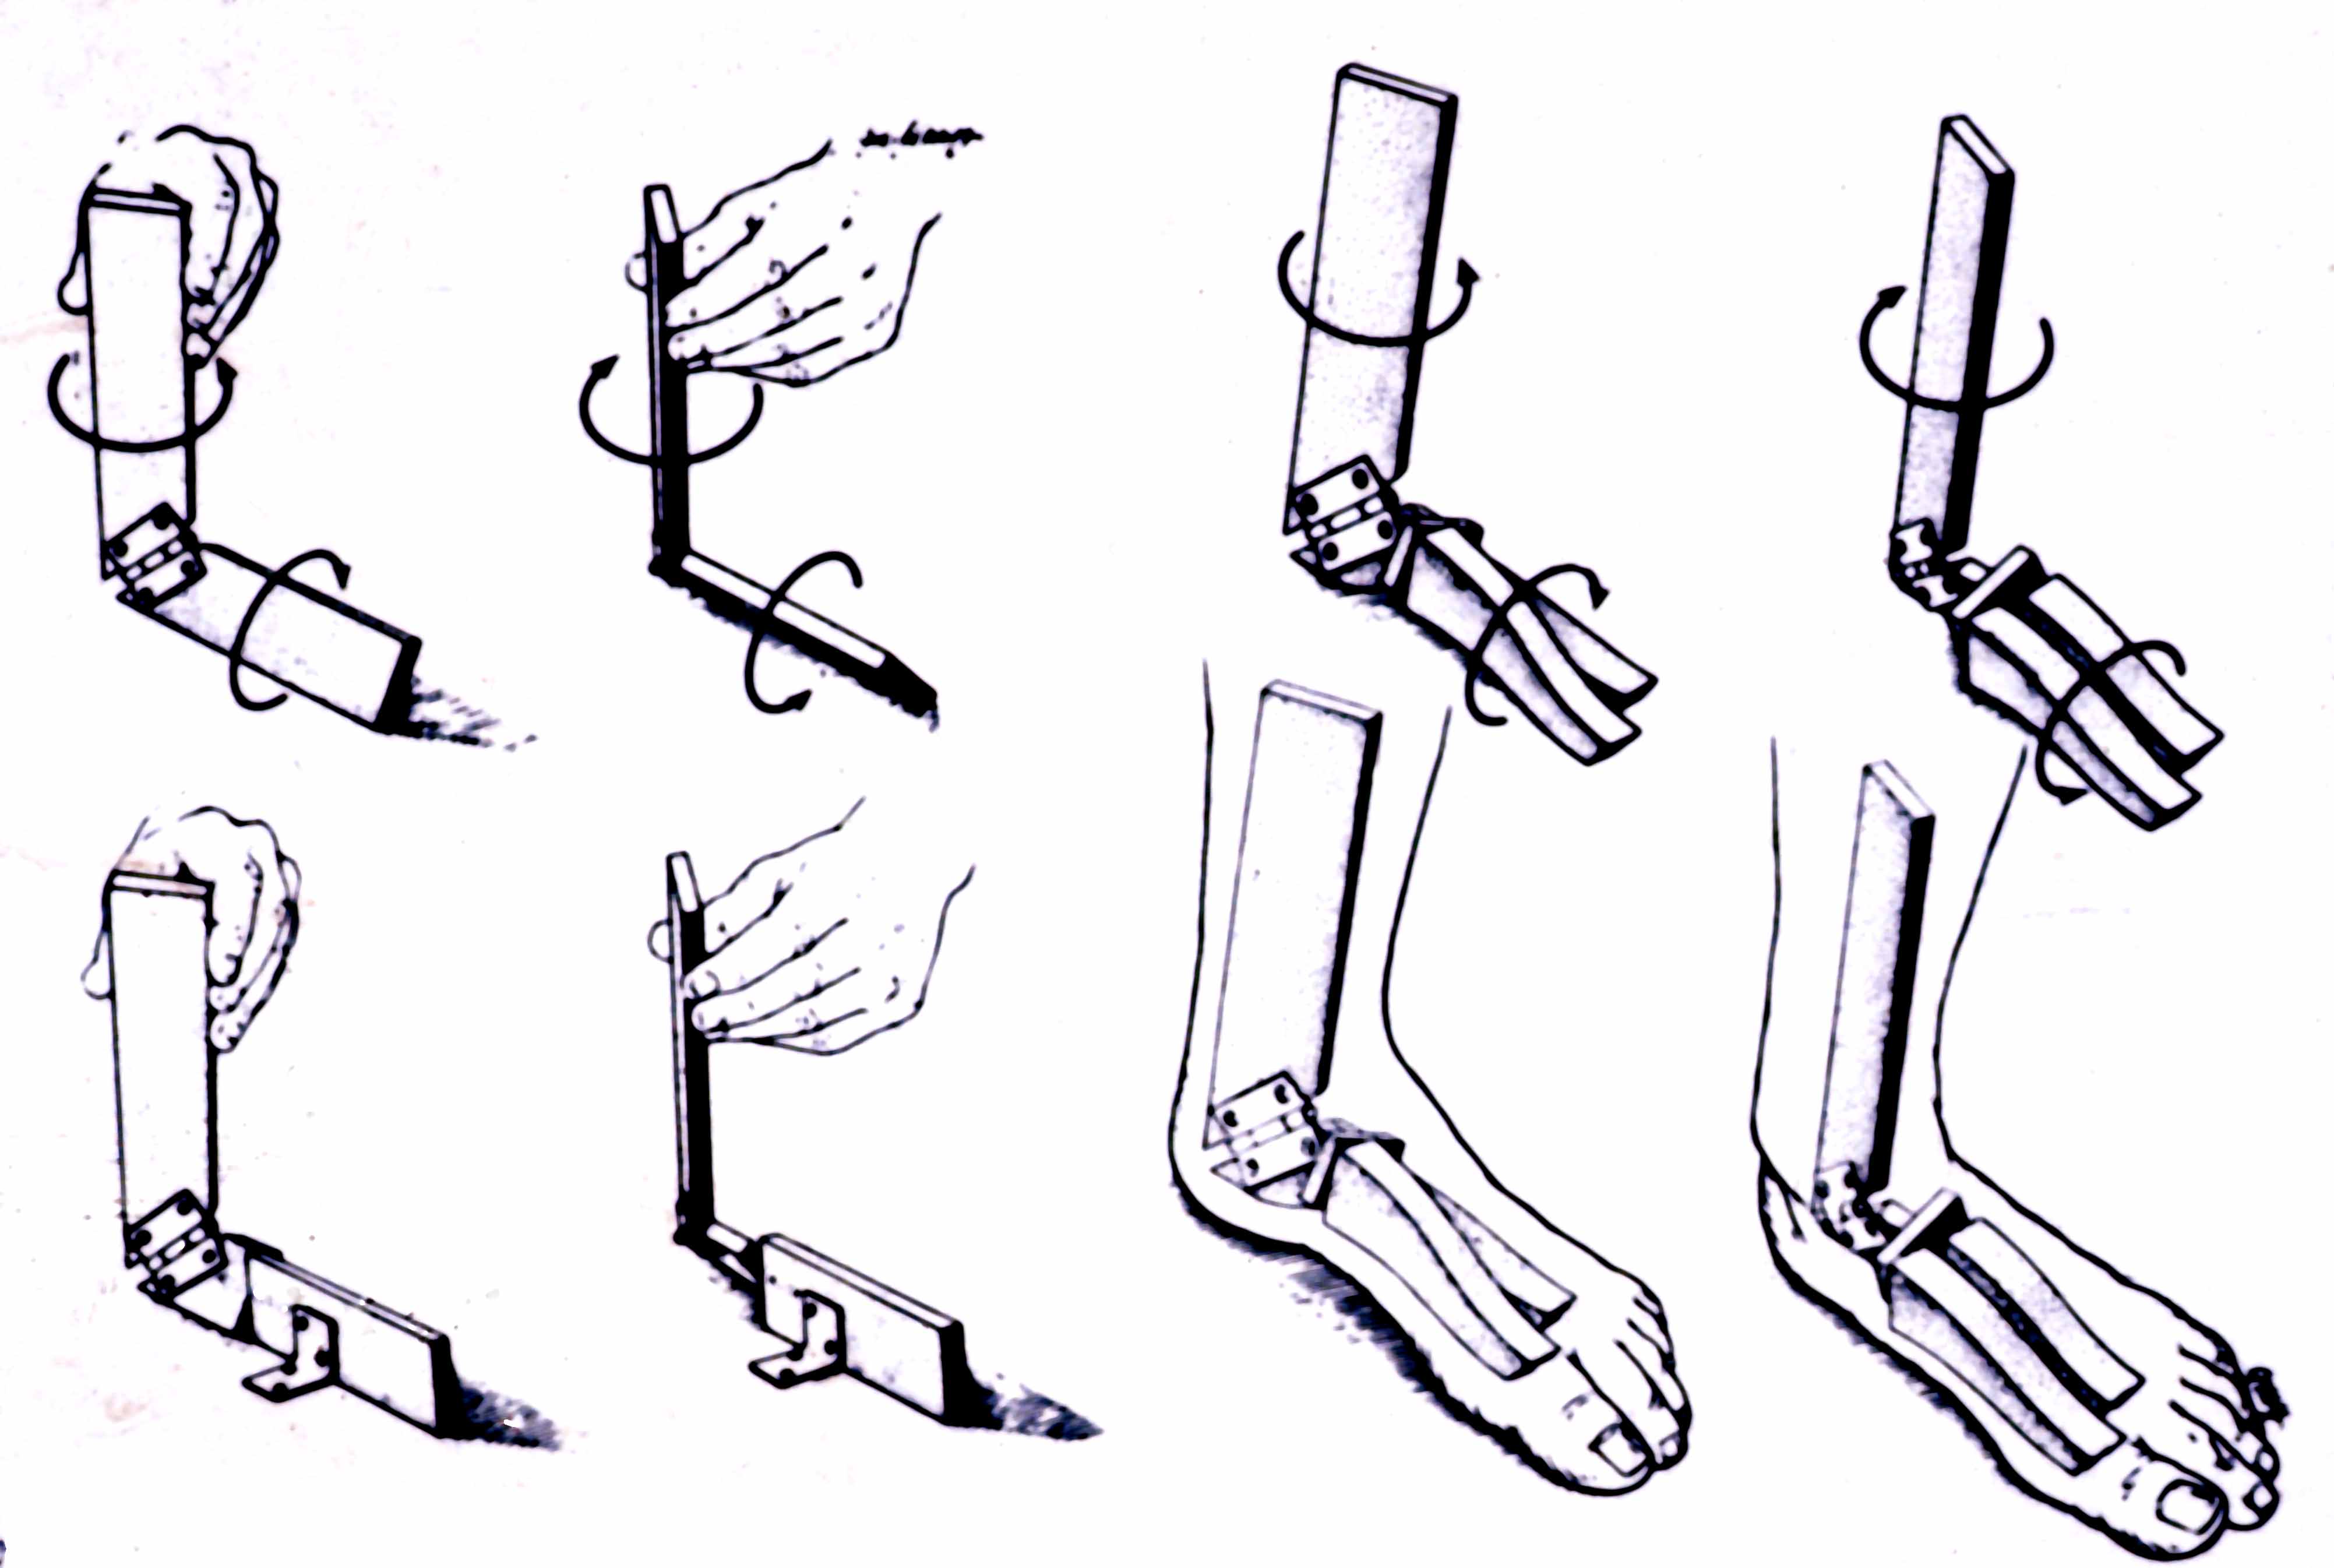 File:Foot & ankle kinesiology.jpg